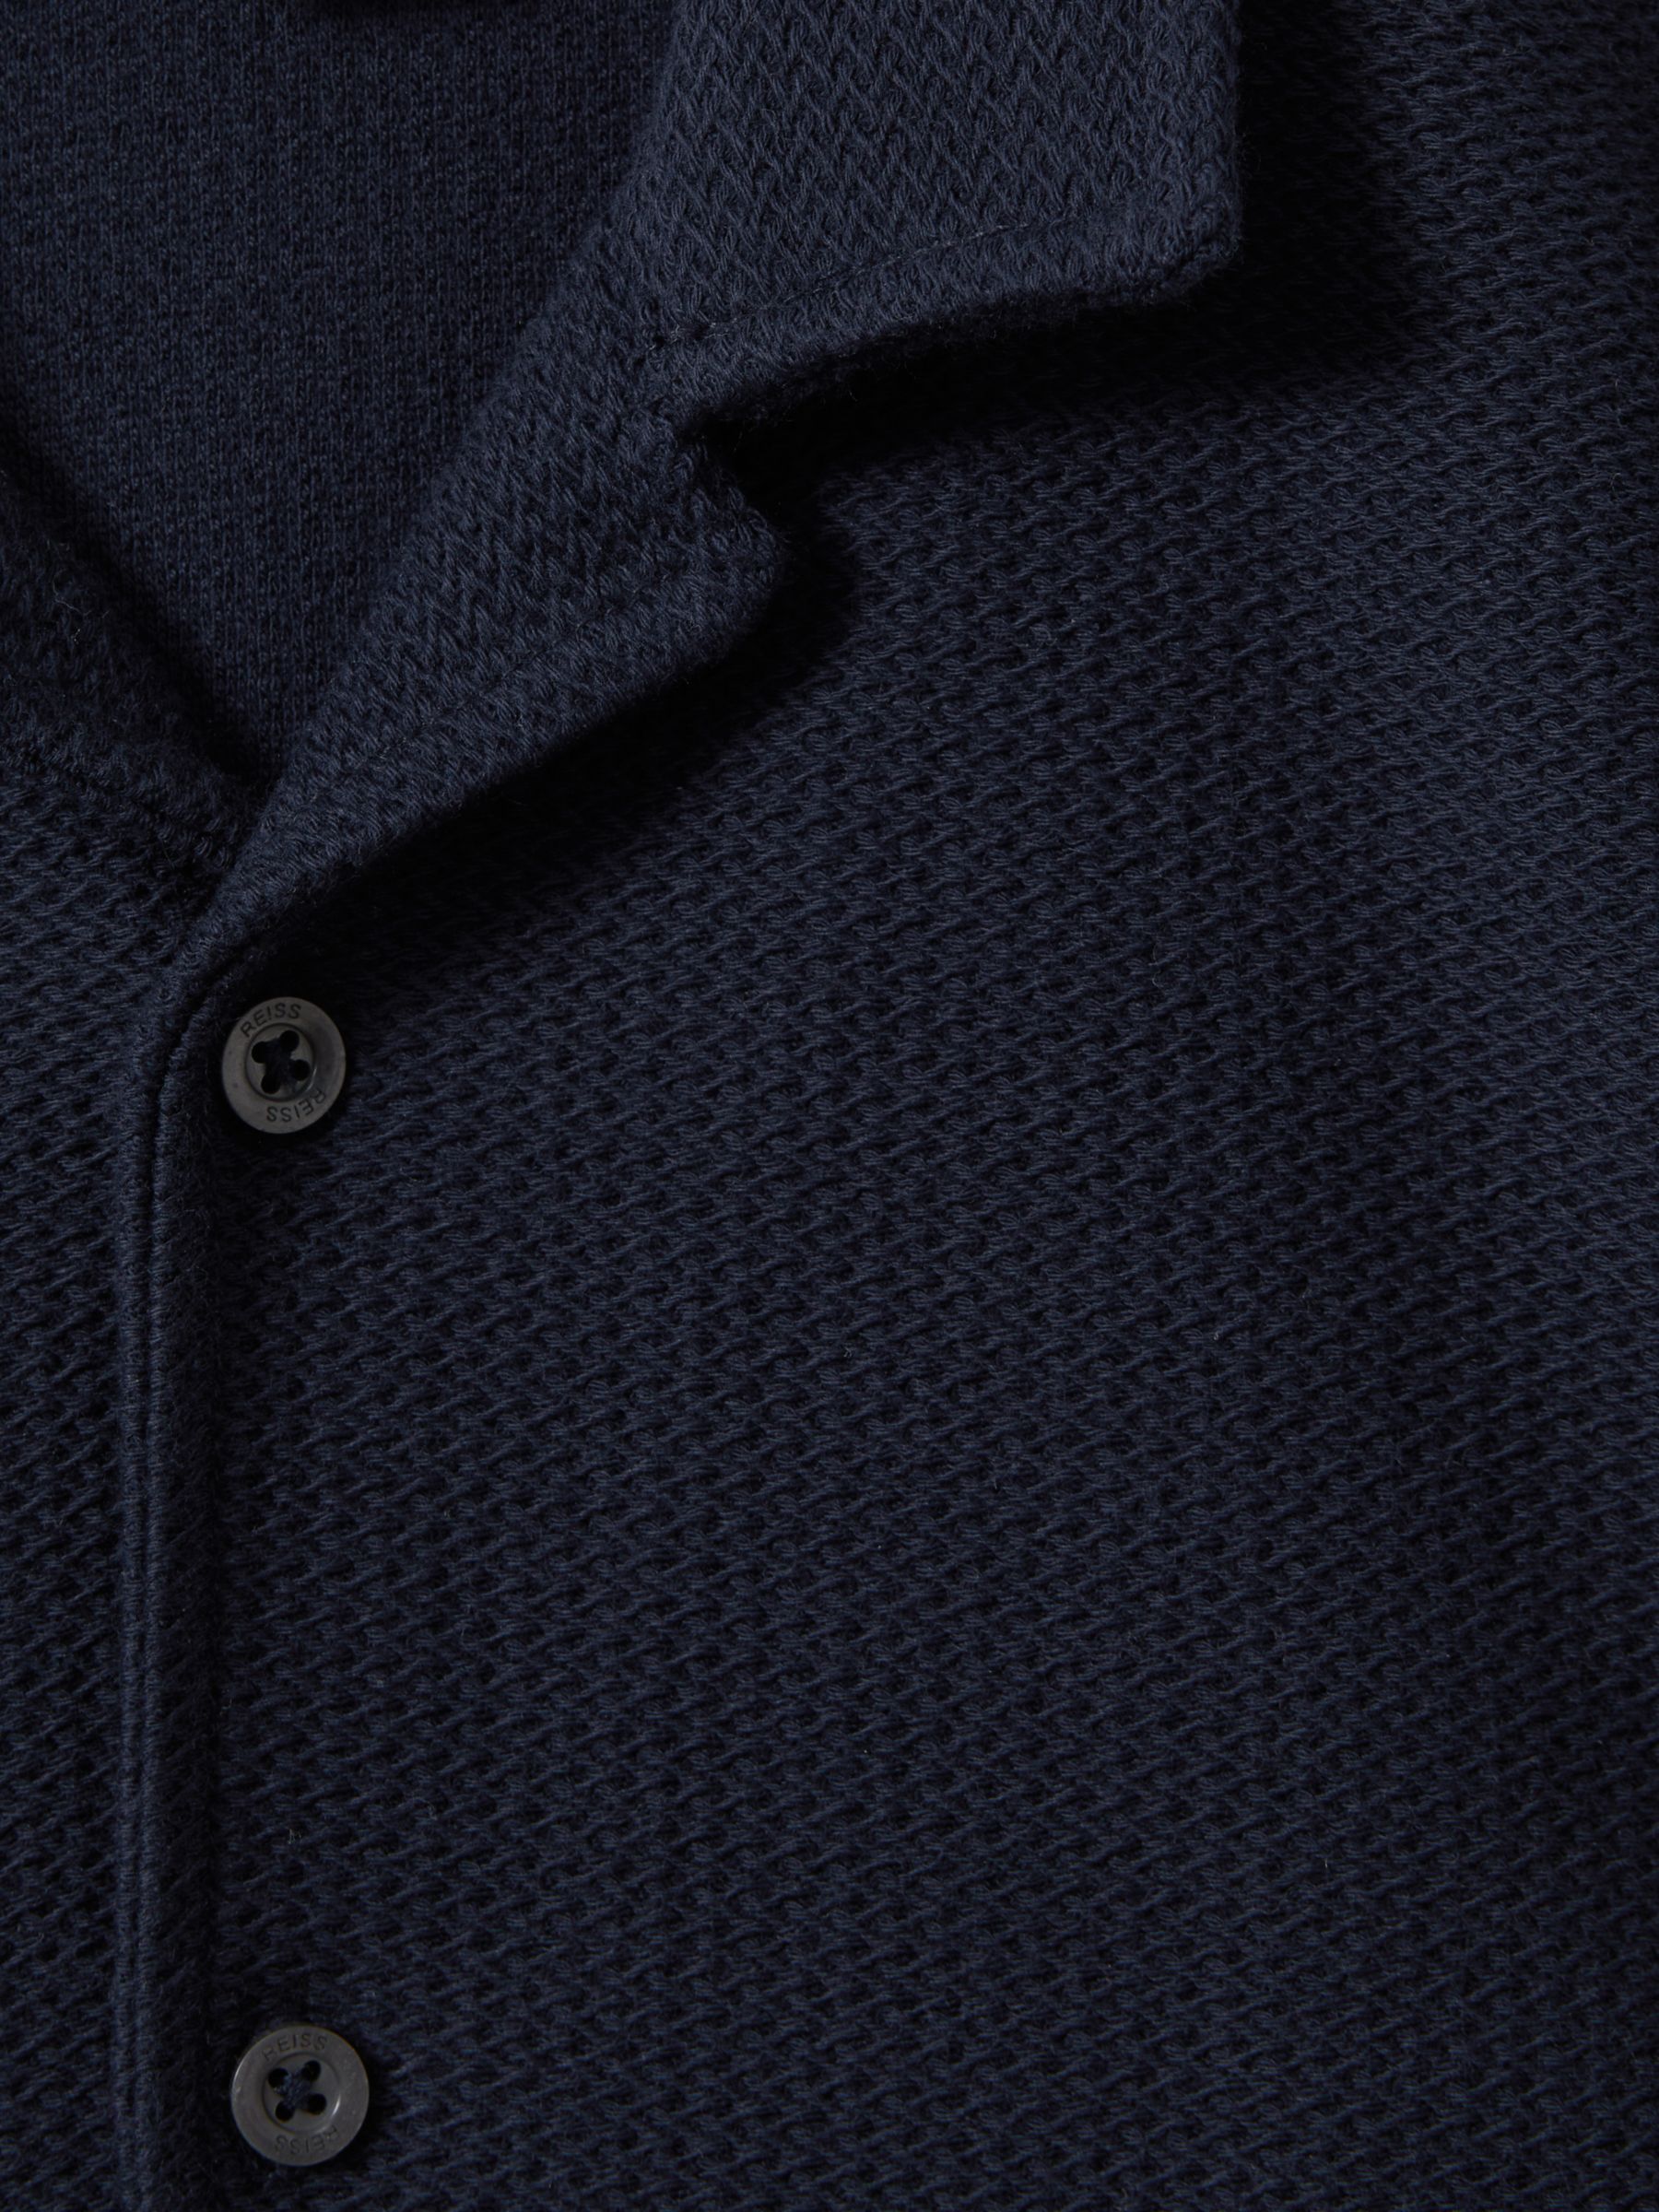 Reiss Kids' Gerrard Textured Button Shirt, Navy, 6-7 years